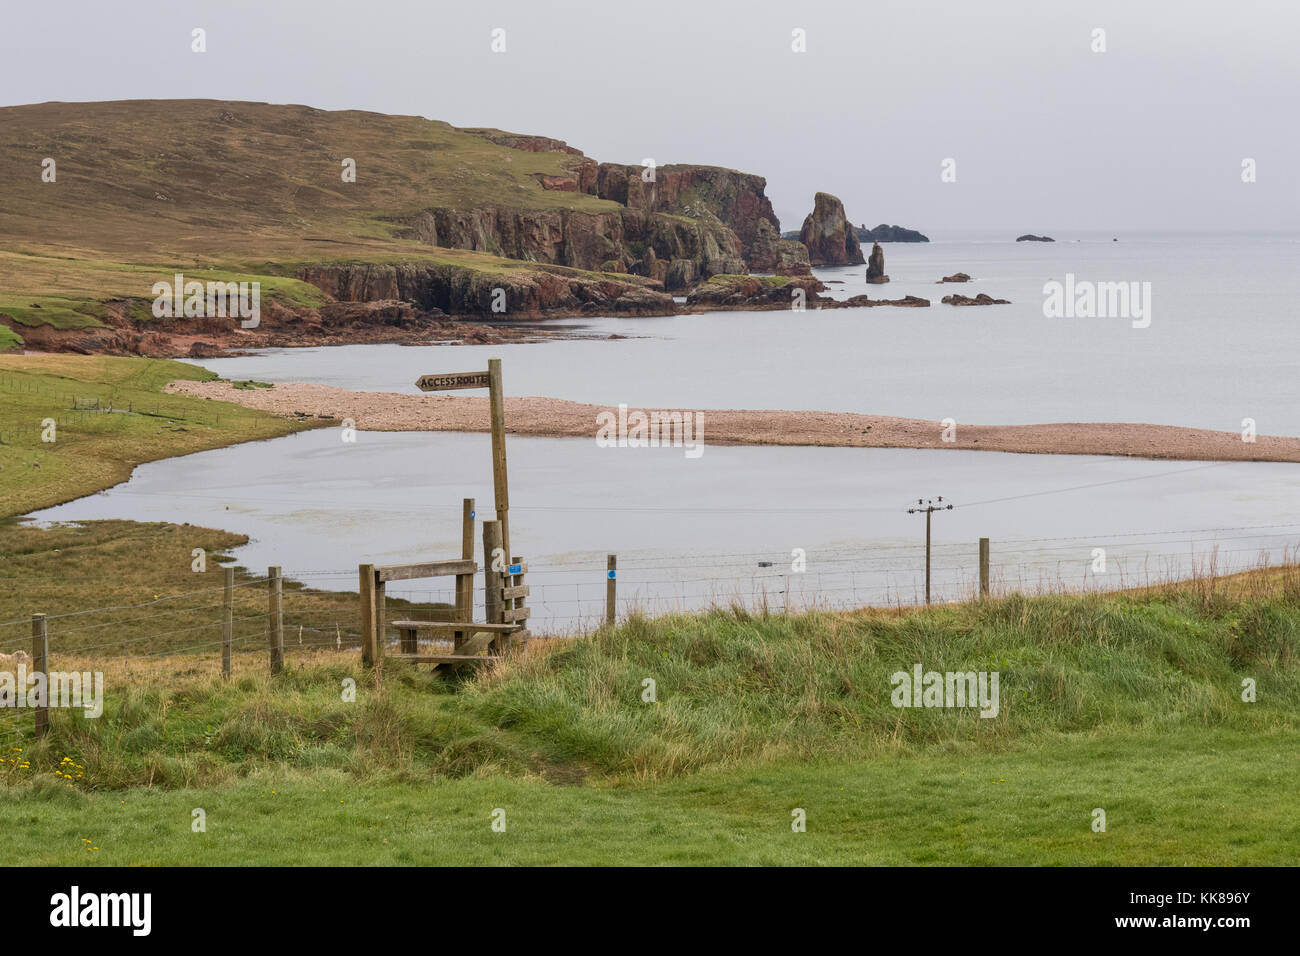 Segnaletica che indica il sentiero per Braewick Bay vicino al campeggio Braewick cafe, Eshaness, Isole Shetland, Scozia, Regno Unito Foto Stock